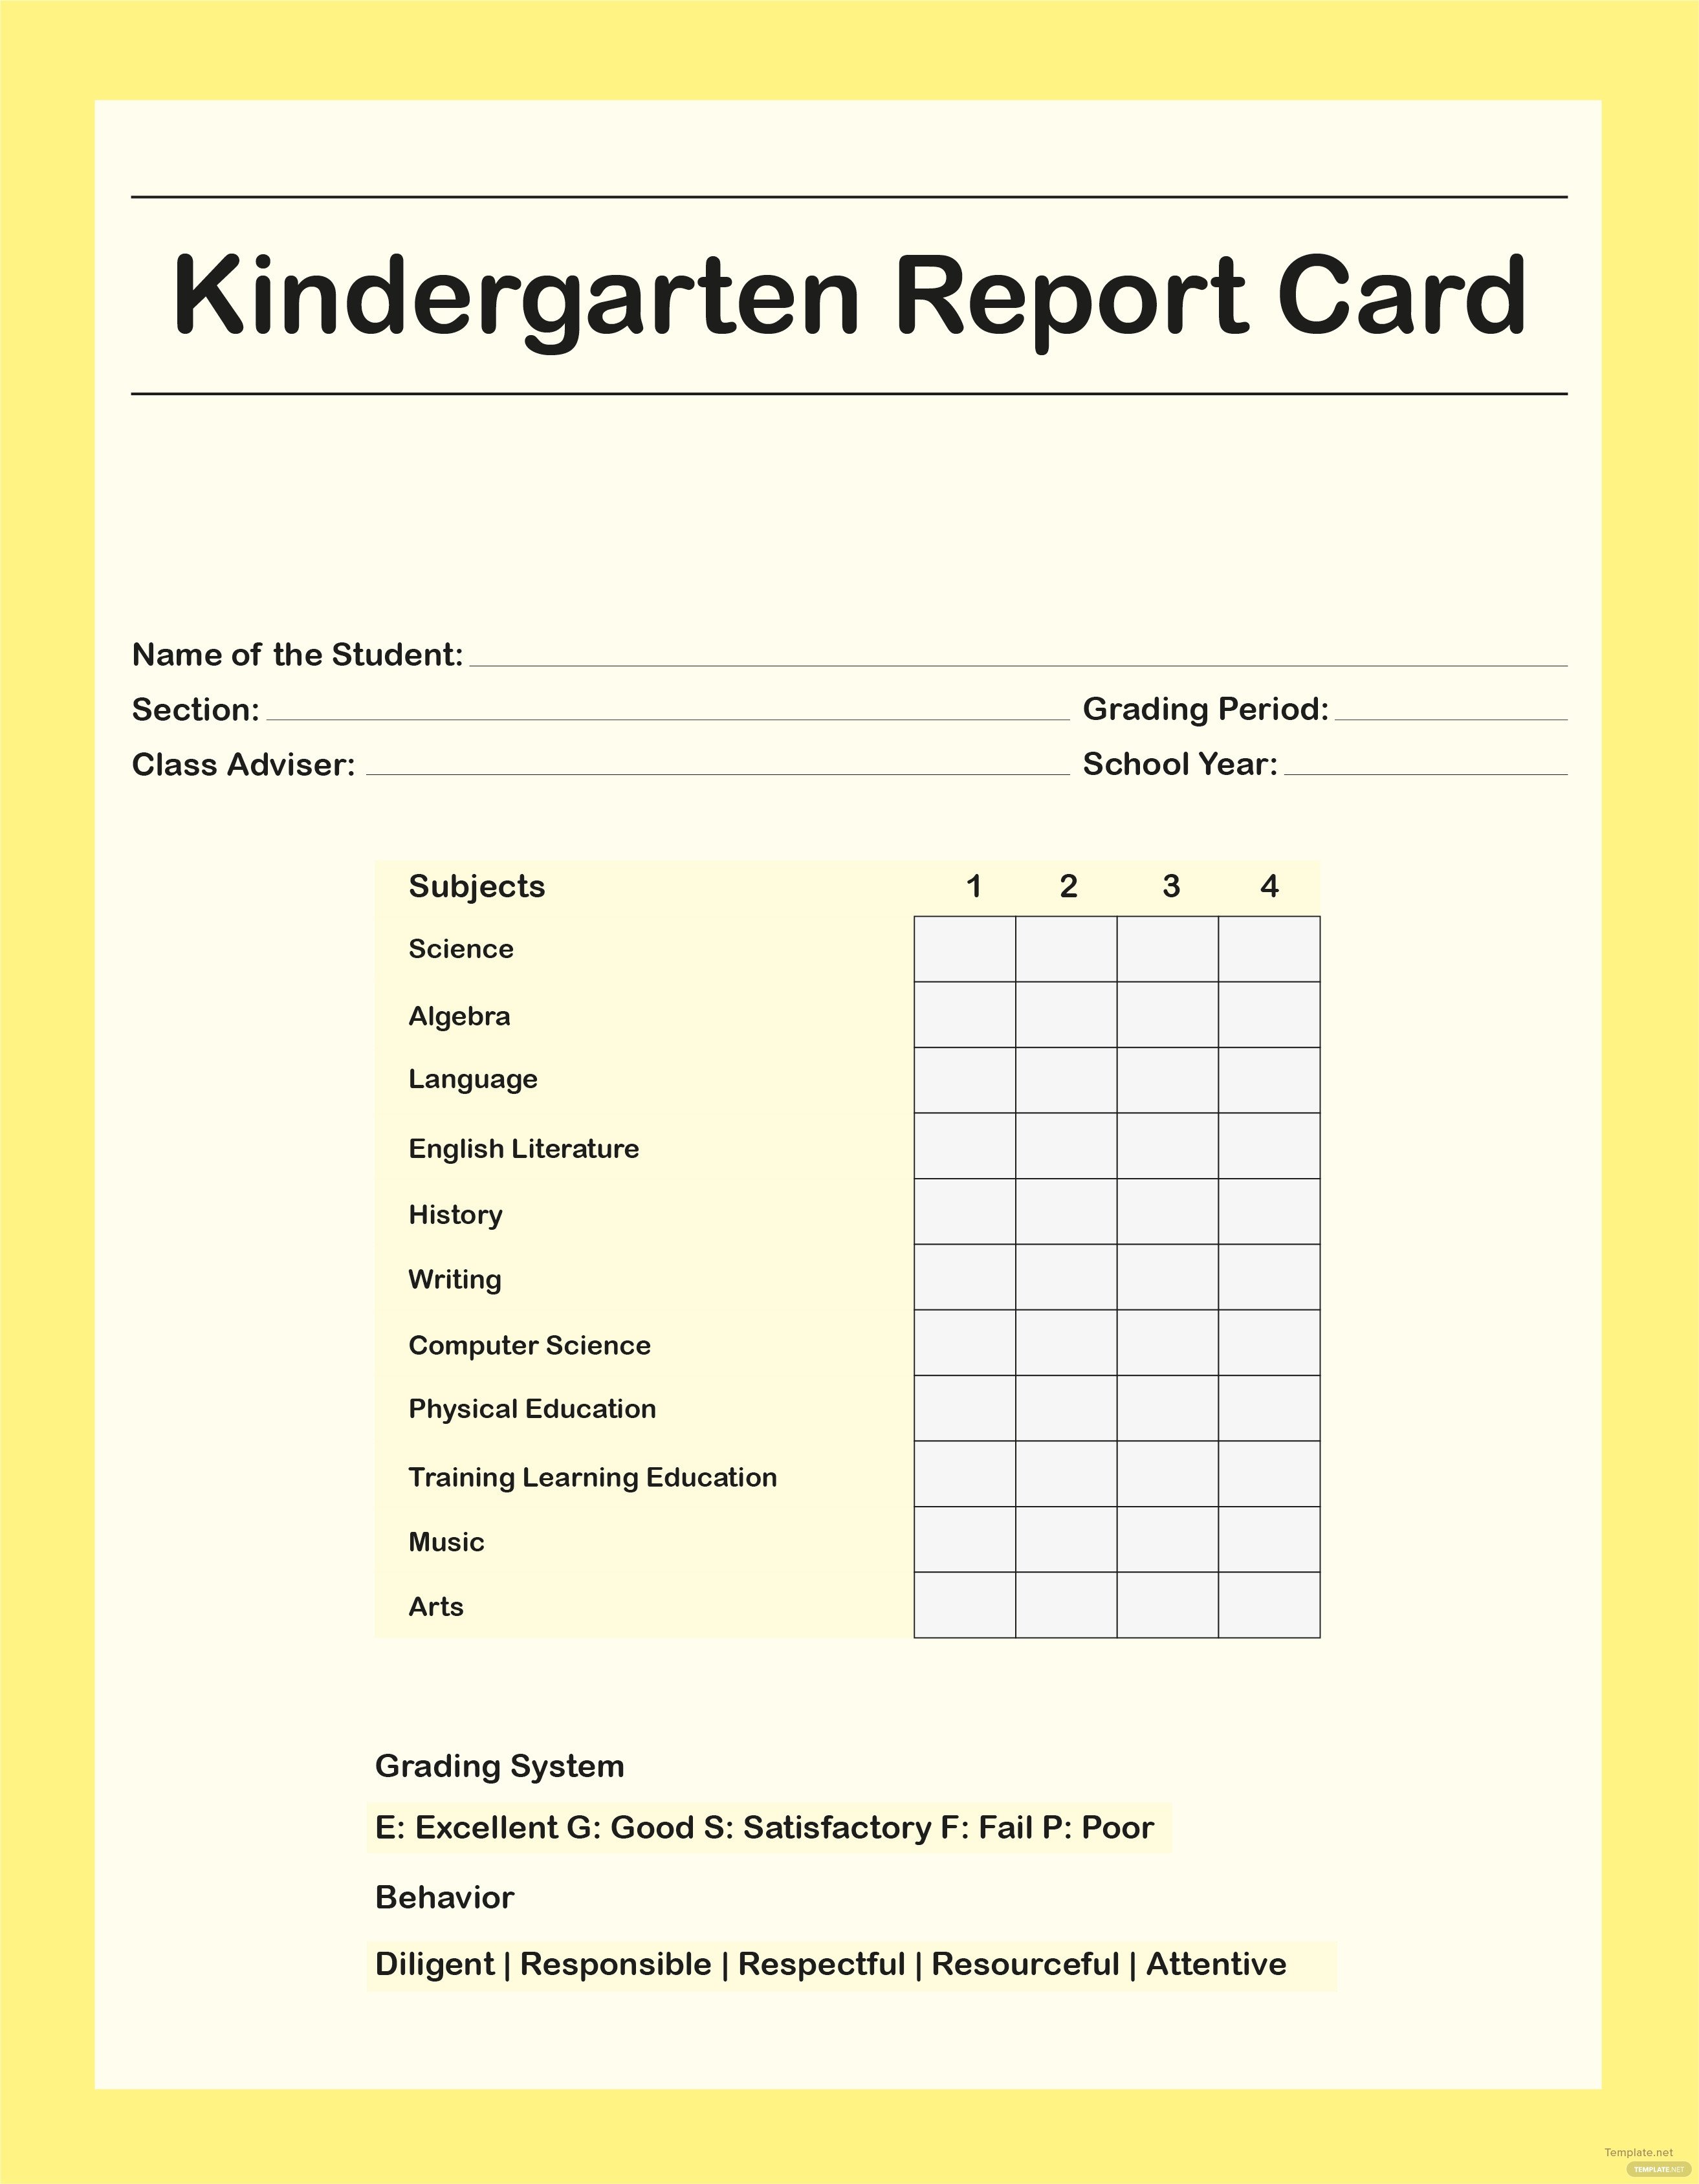 Kindergarten Report Card Template Free Kindergarten Report Card Template In Adobe Shop